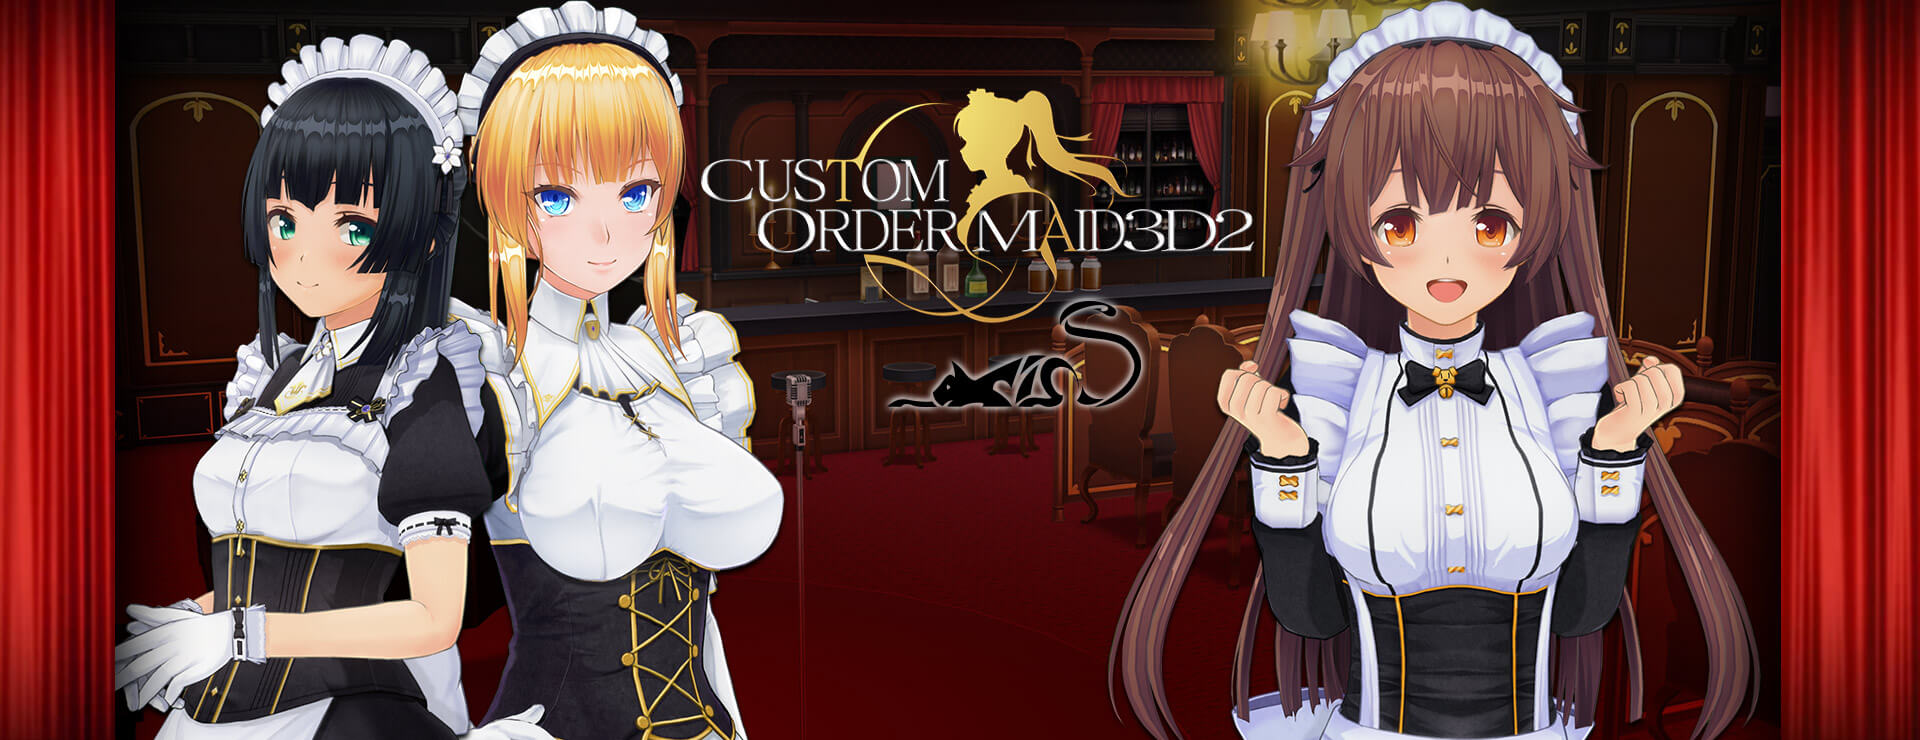 Custom Order Maid 3D2 GP 01 (DLC) - Aventura Acción Juego